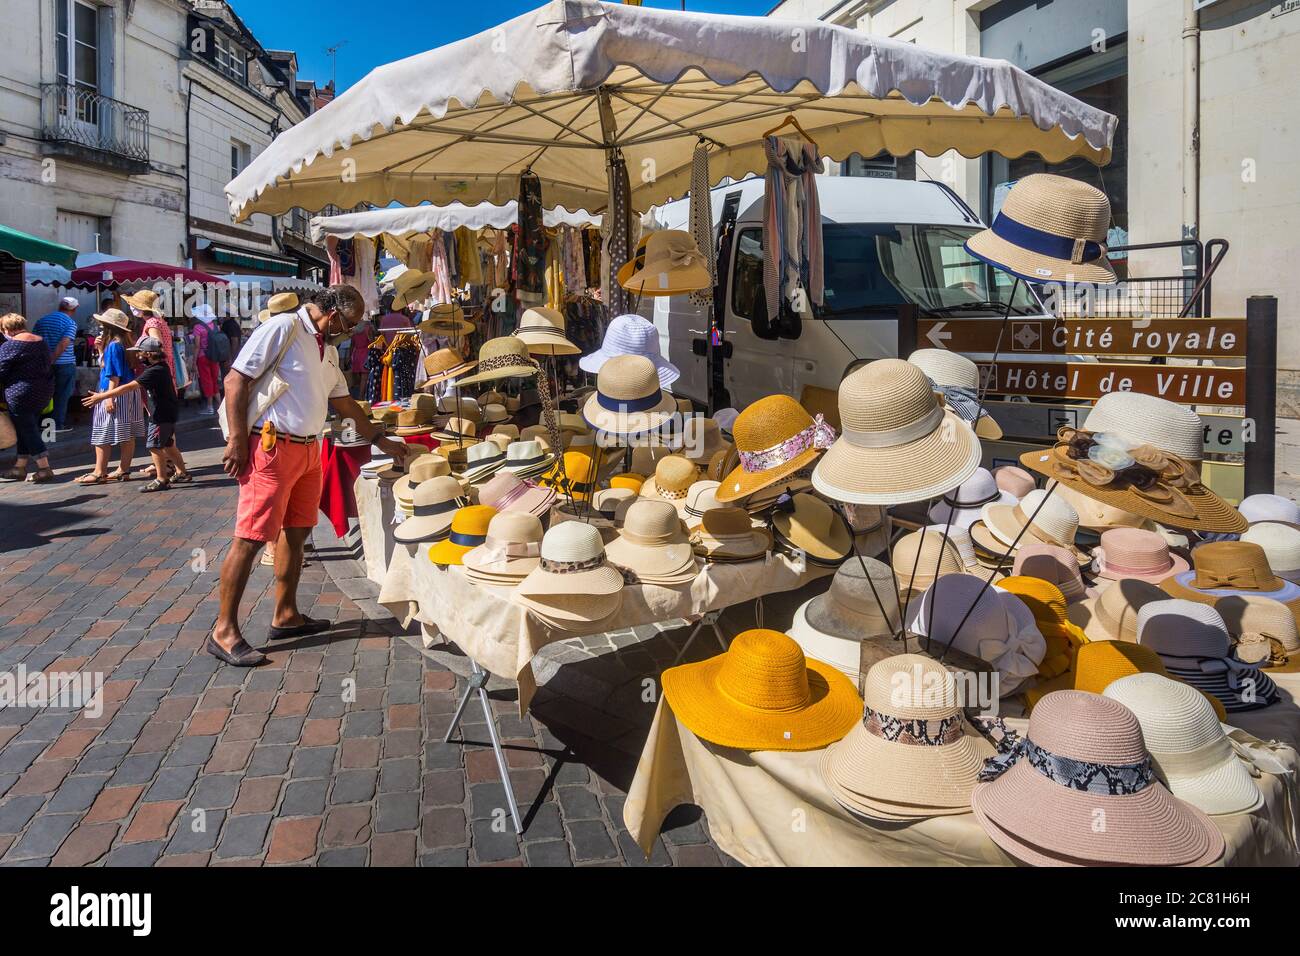 Homme regardant des chapeaux de paille dans le marché français en plein air  - Loches, Indre-et-Loire, France Photo Stock - Alamy